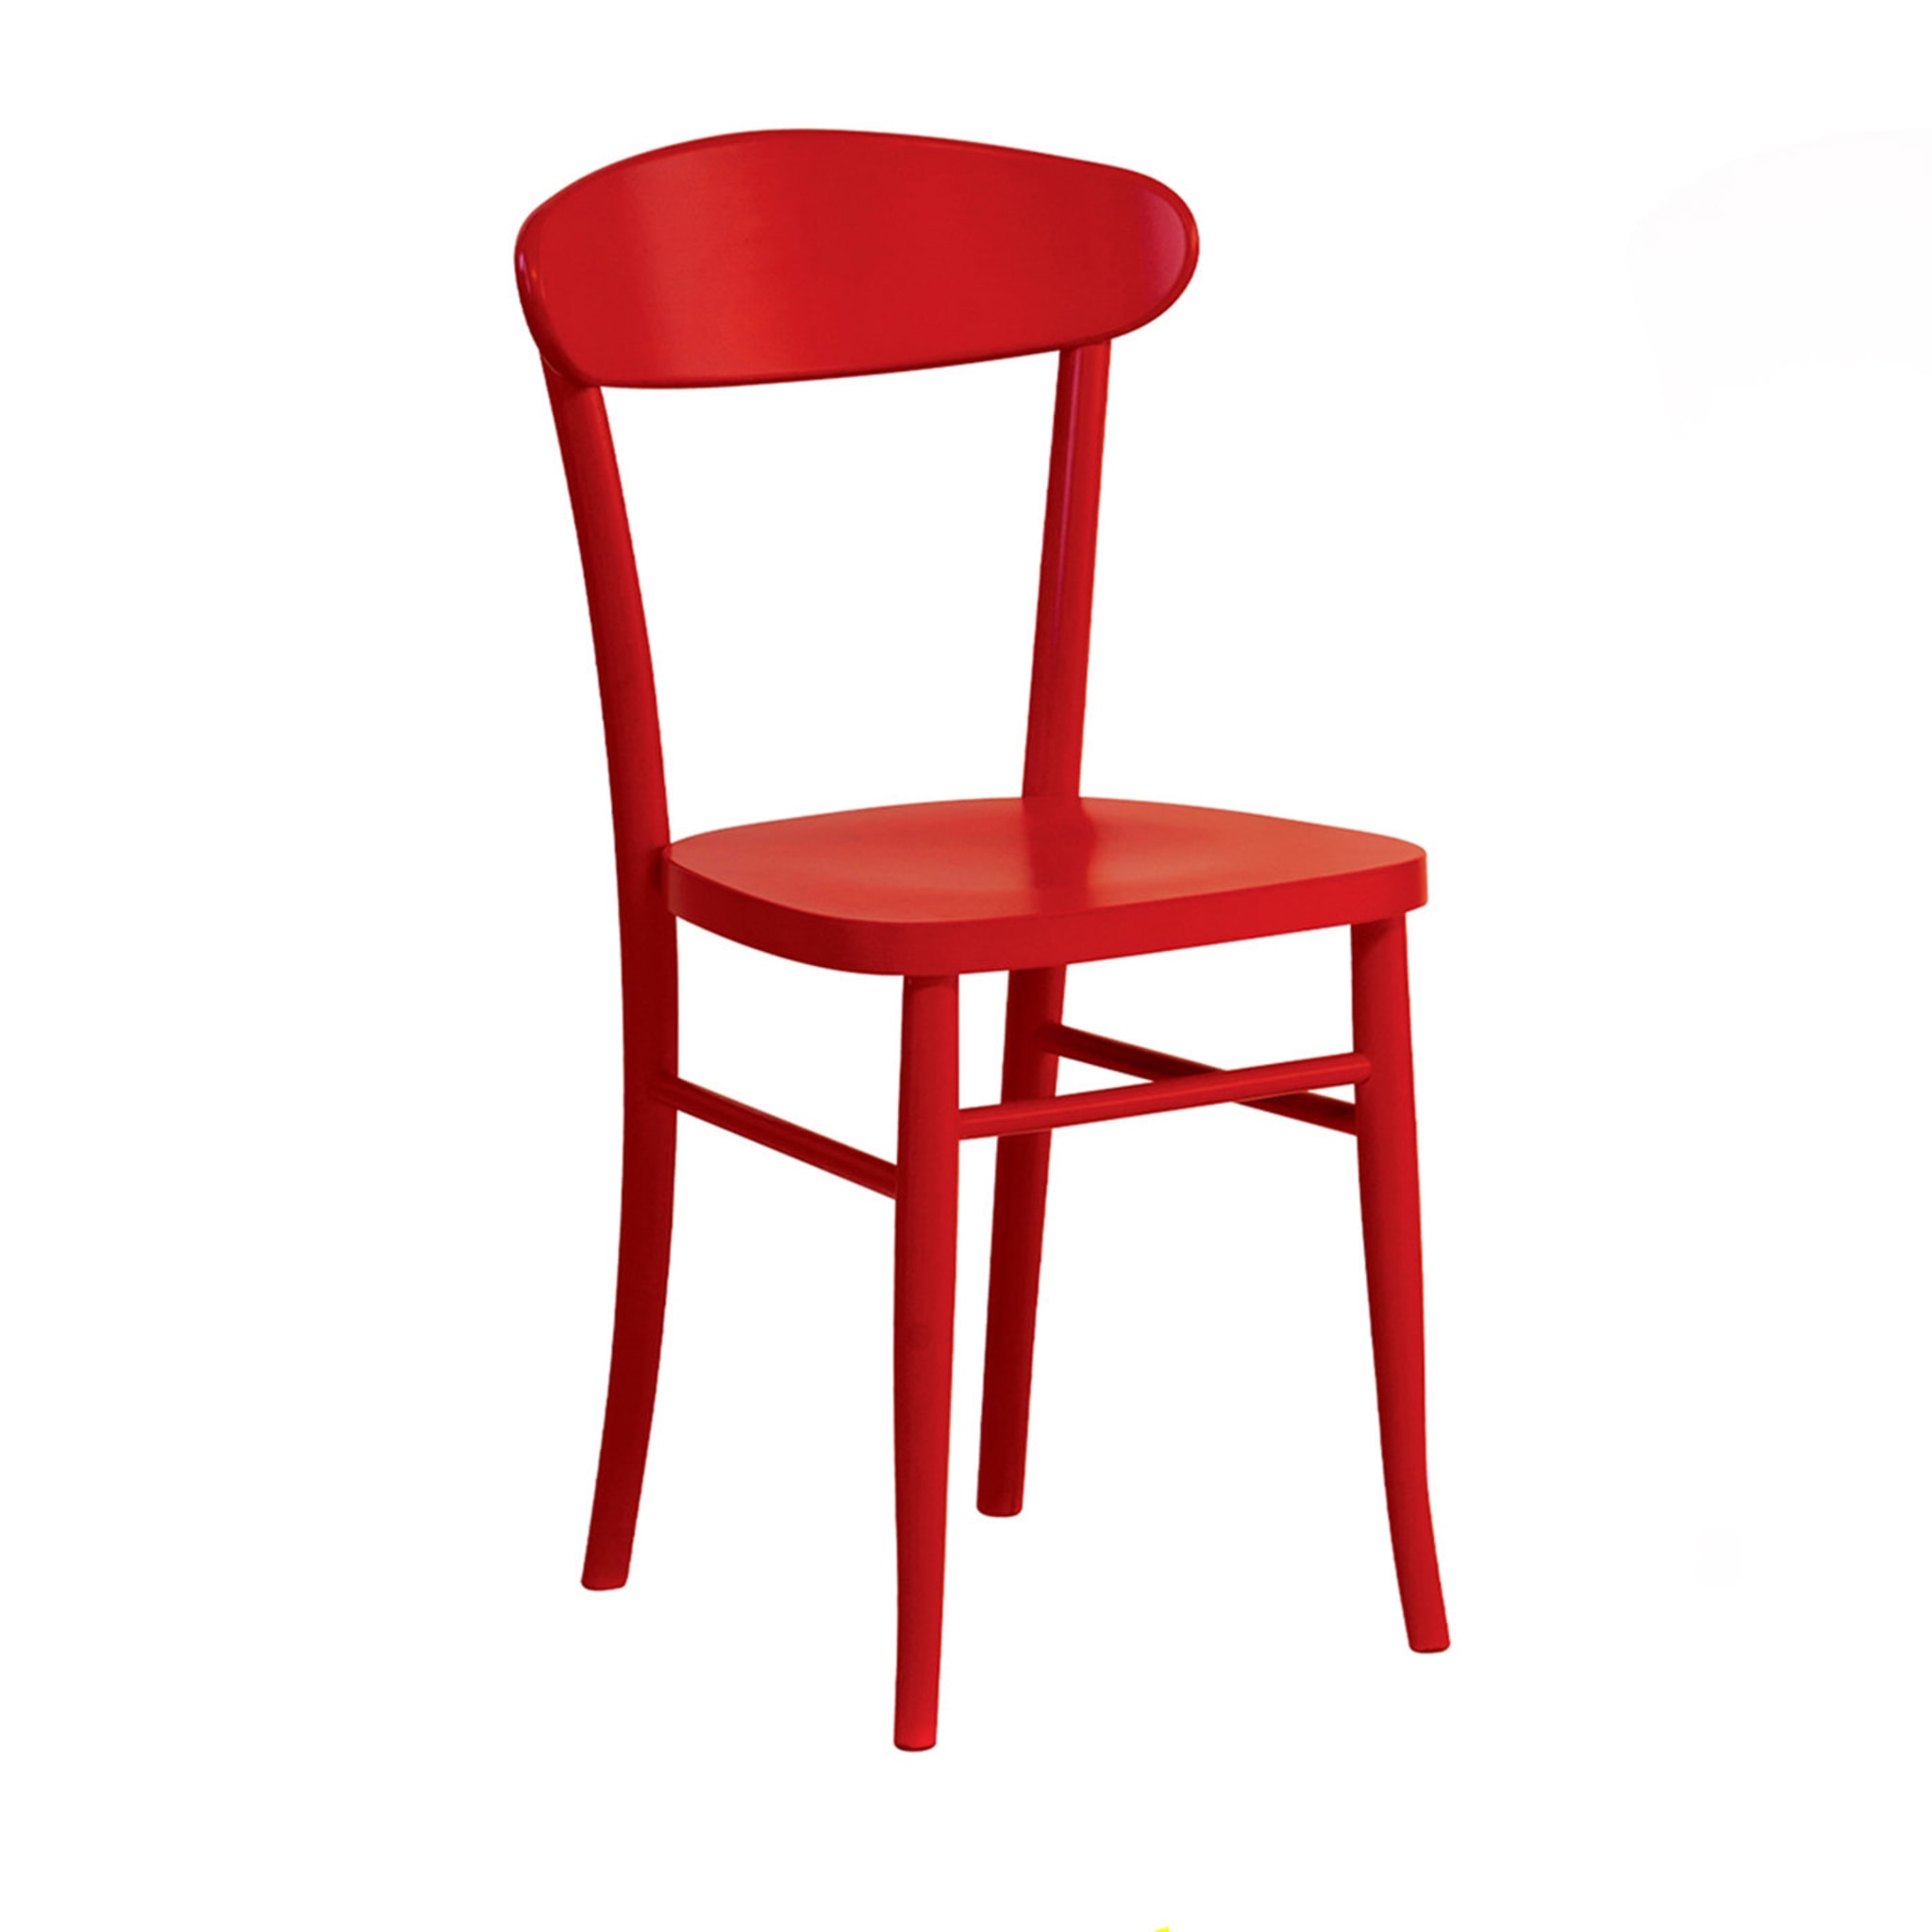 Pamela - Ensemble de 2 chaises rouges - Vue principale